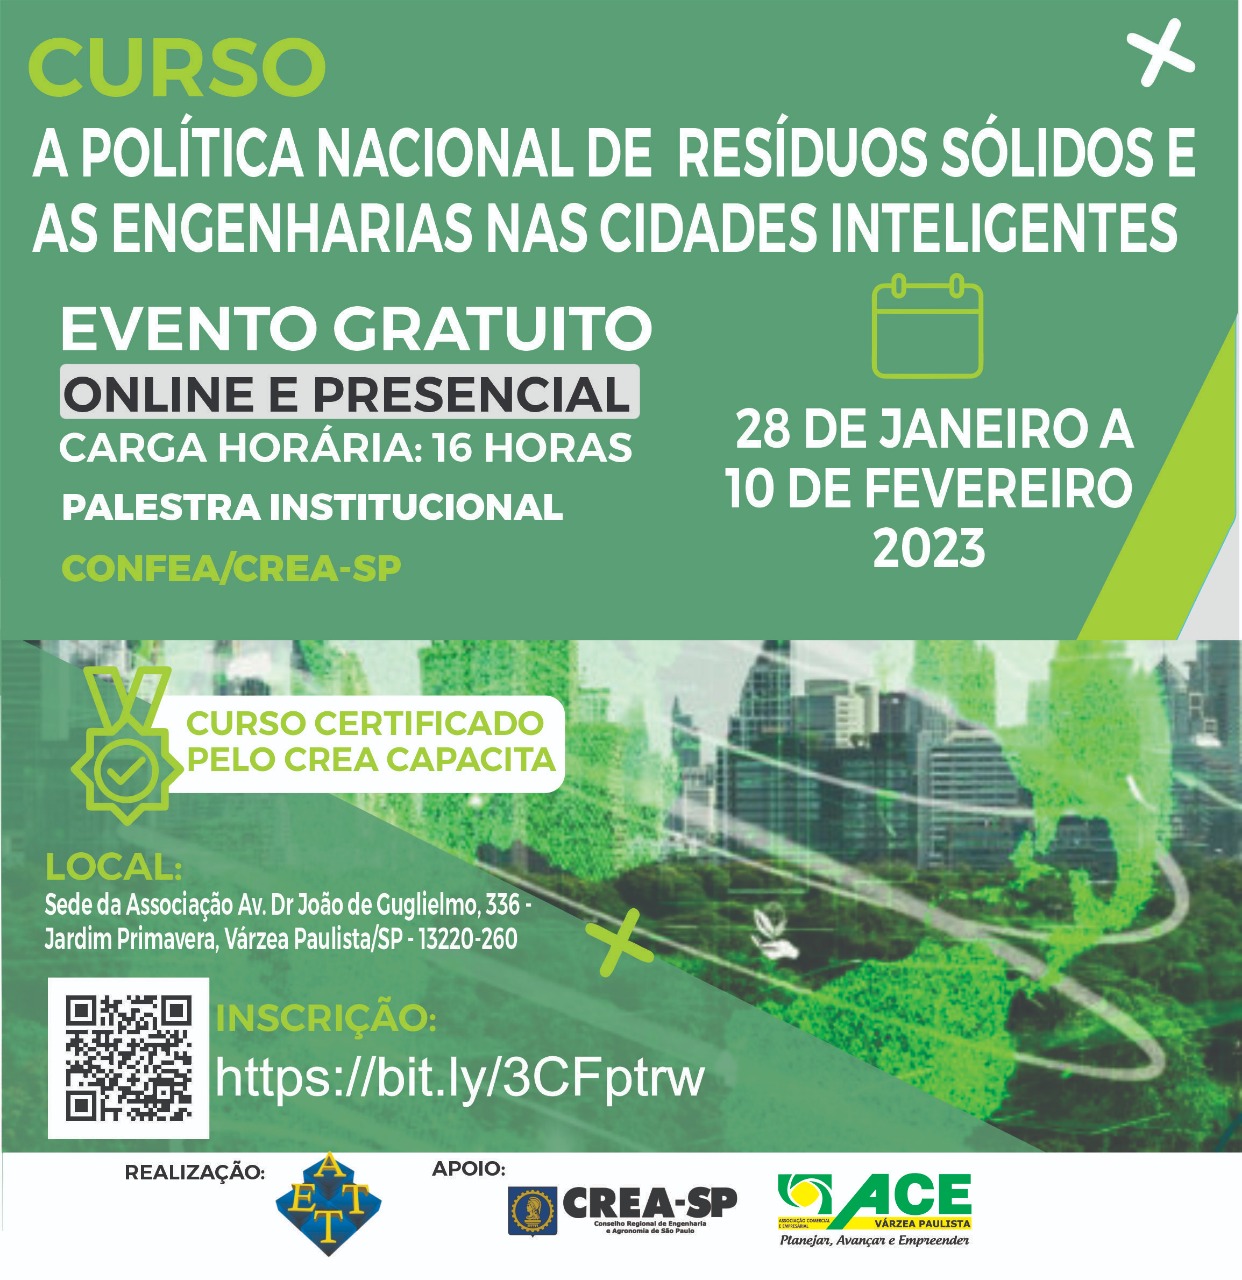 Curso: A Política Nacional de Resíduos Sólidos e As Engenharias nas Cidades Inteligentes